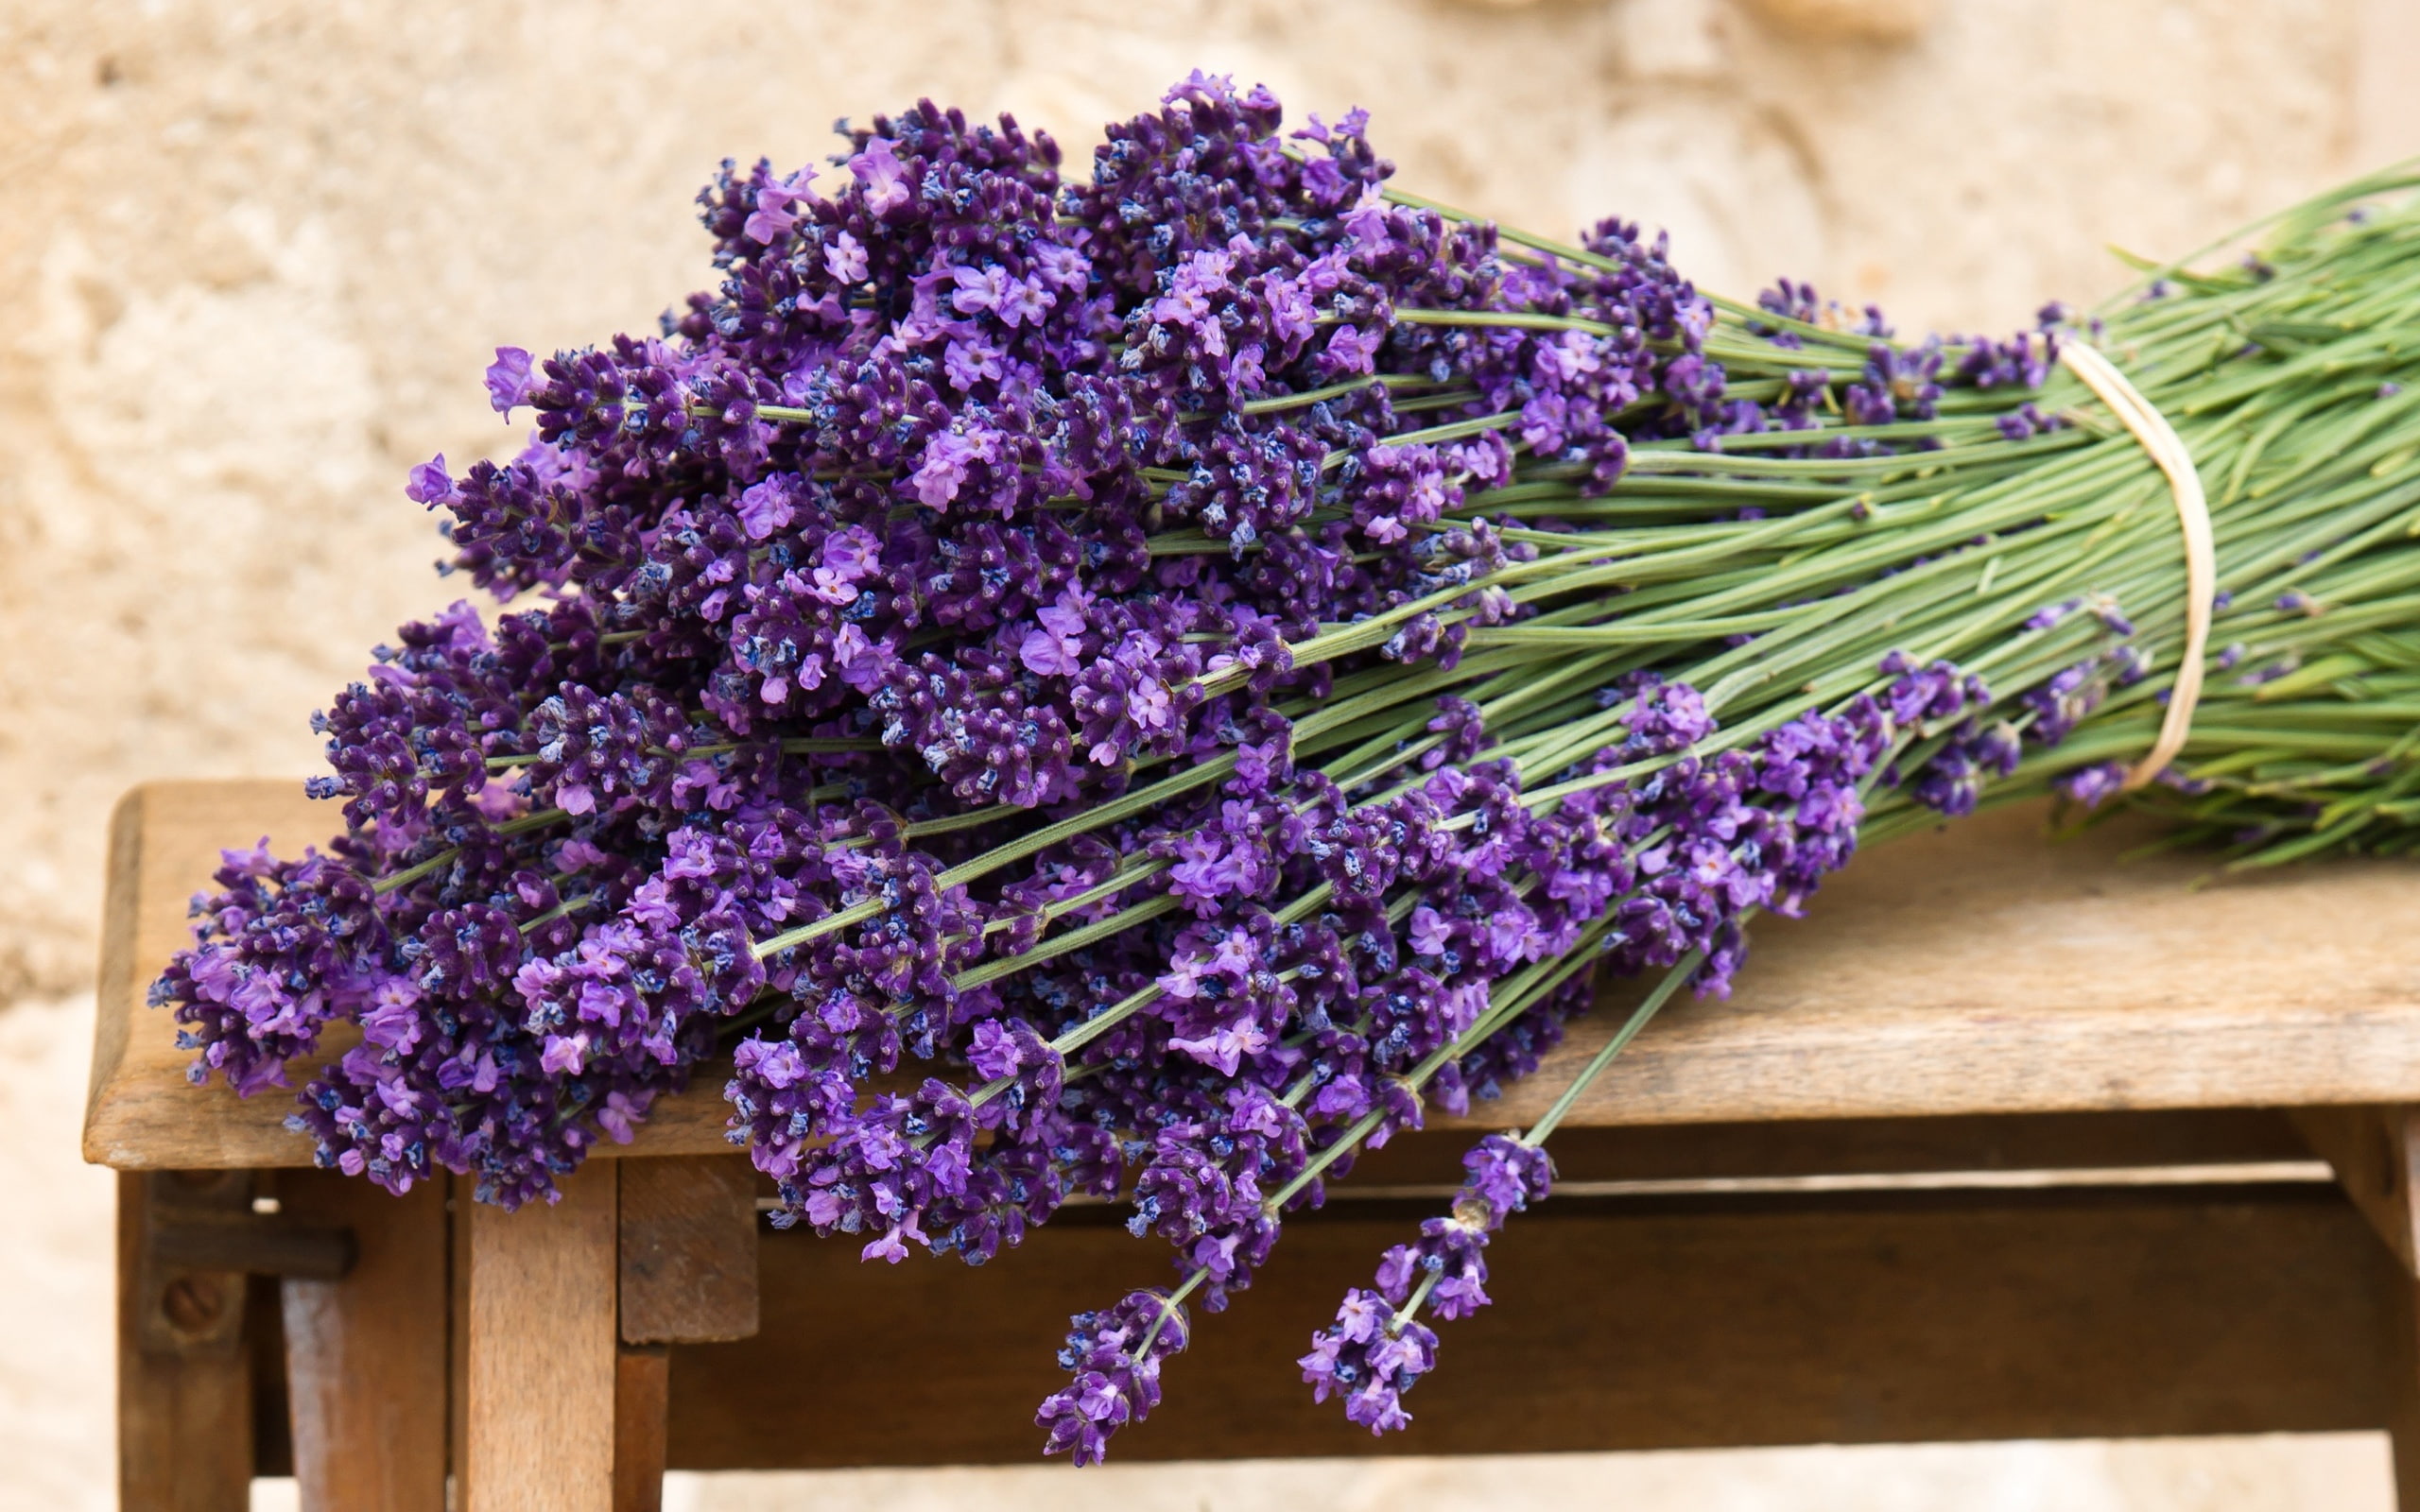 Bouquet of purple lavender flowers